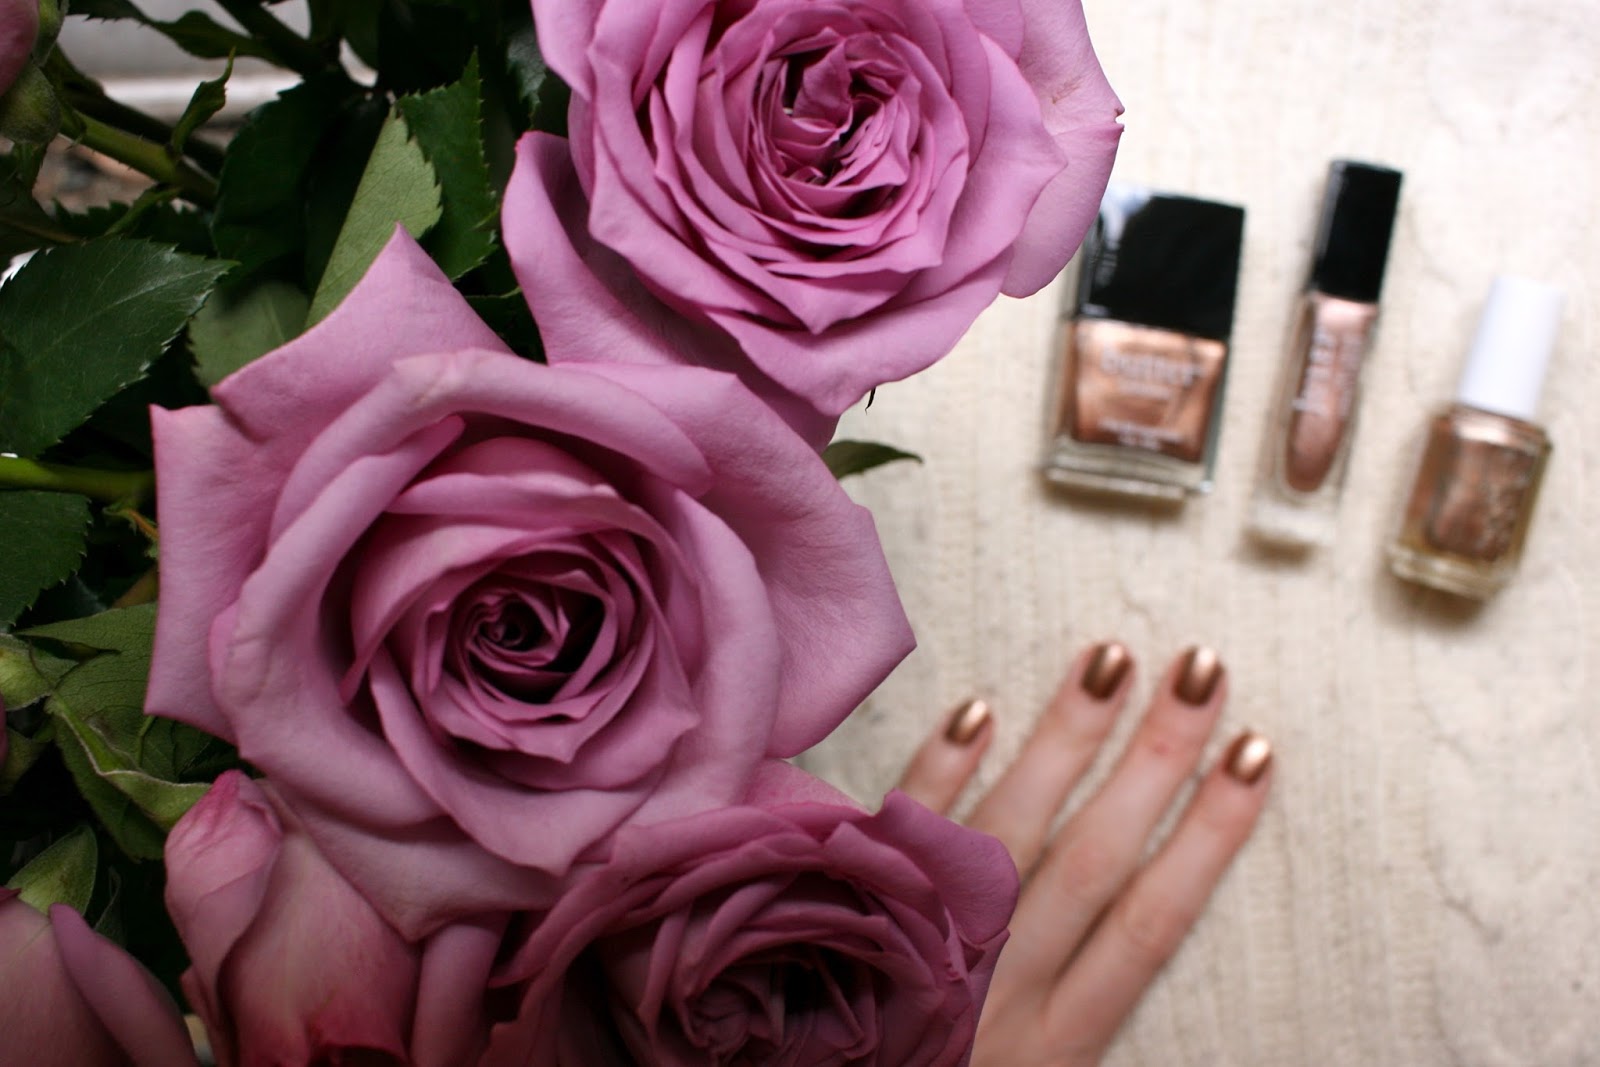 4. "Rose gold" nail polish - wide 8